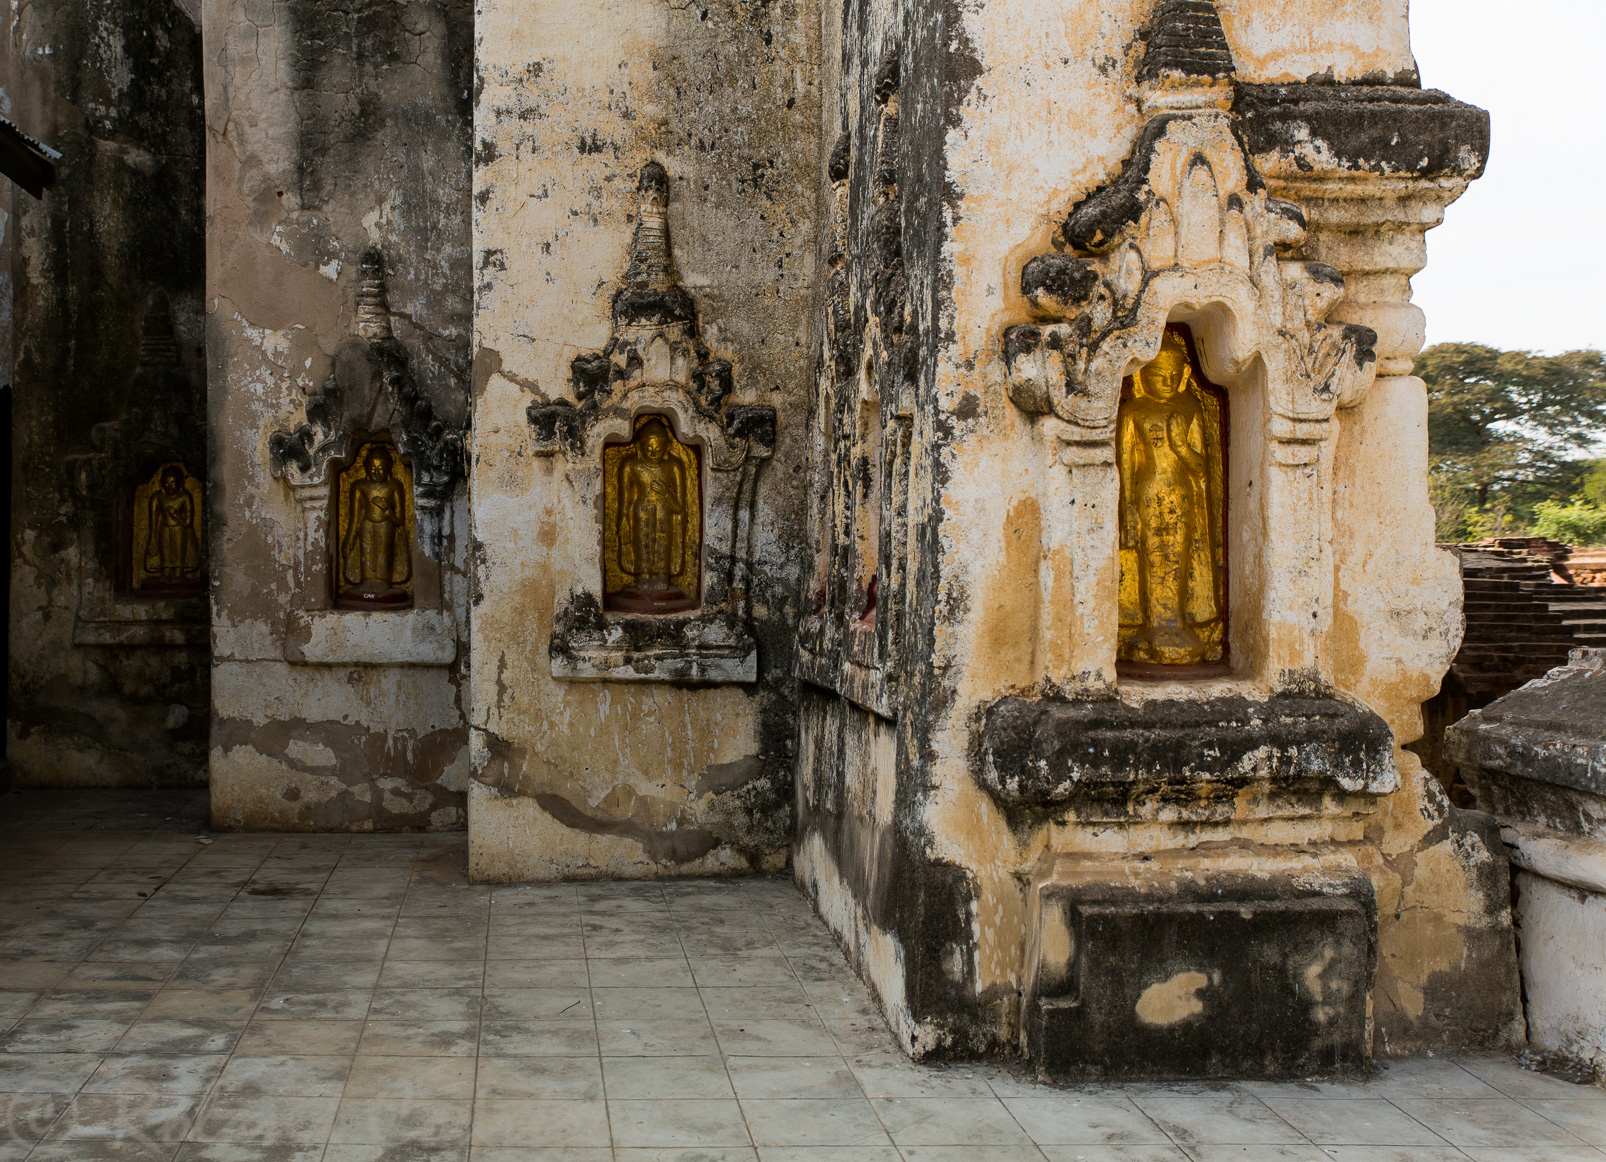 Temple Mahabodhi. Caractéristique de cette architecture, les nombreuses niches protégeant une statue de Bouddha. Certaines sont recouvertes d'or.